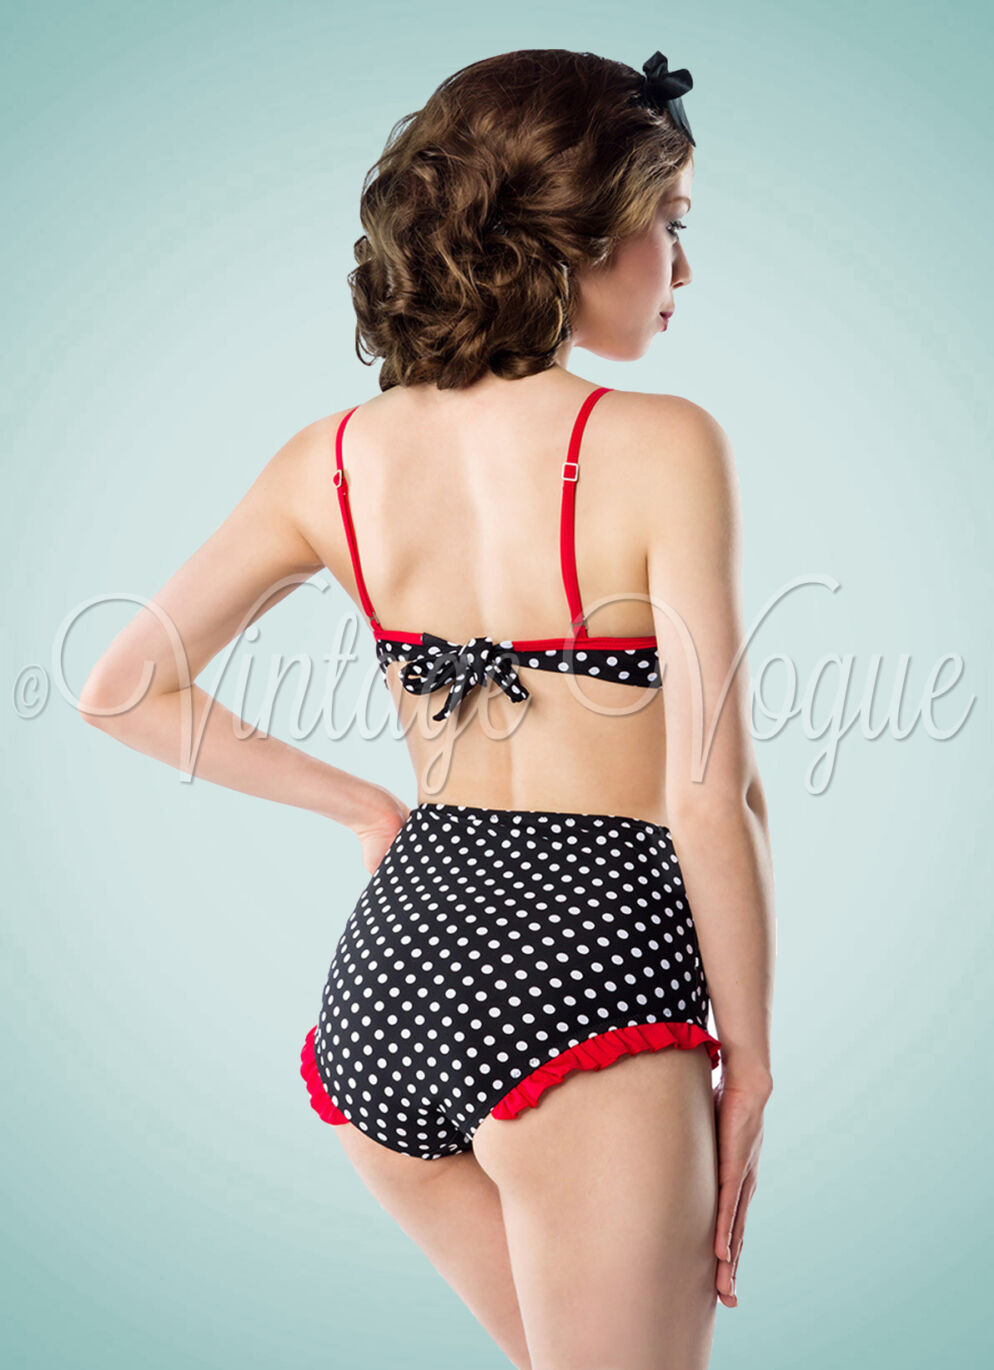 Belsira 50er Jahre Retro Bademode High Waist Punkte Polka Dots Bikini in Schwarz Weiß Rot 0